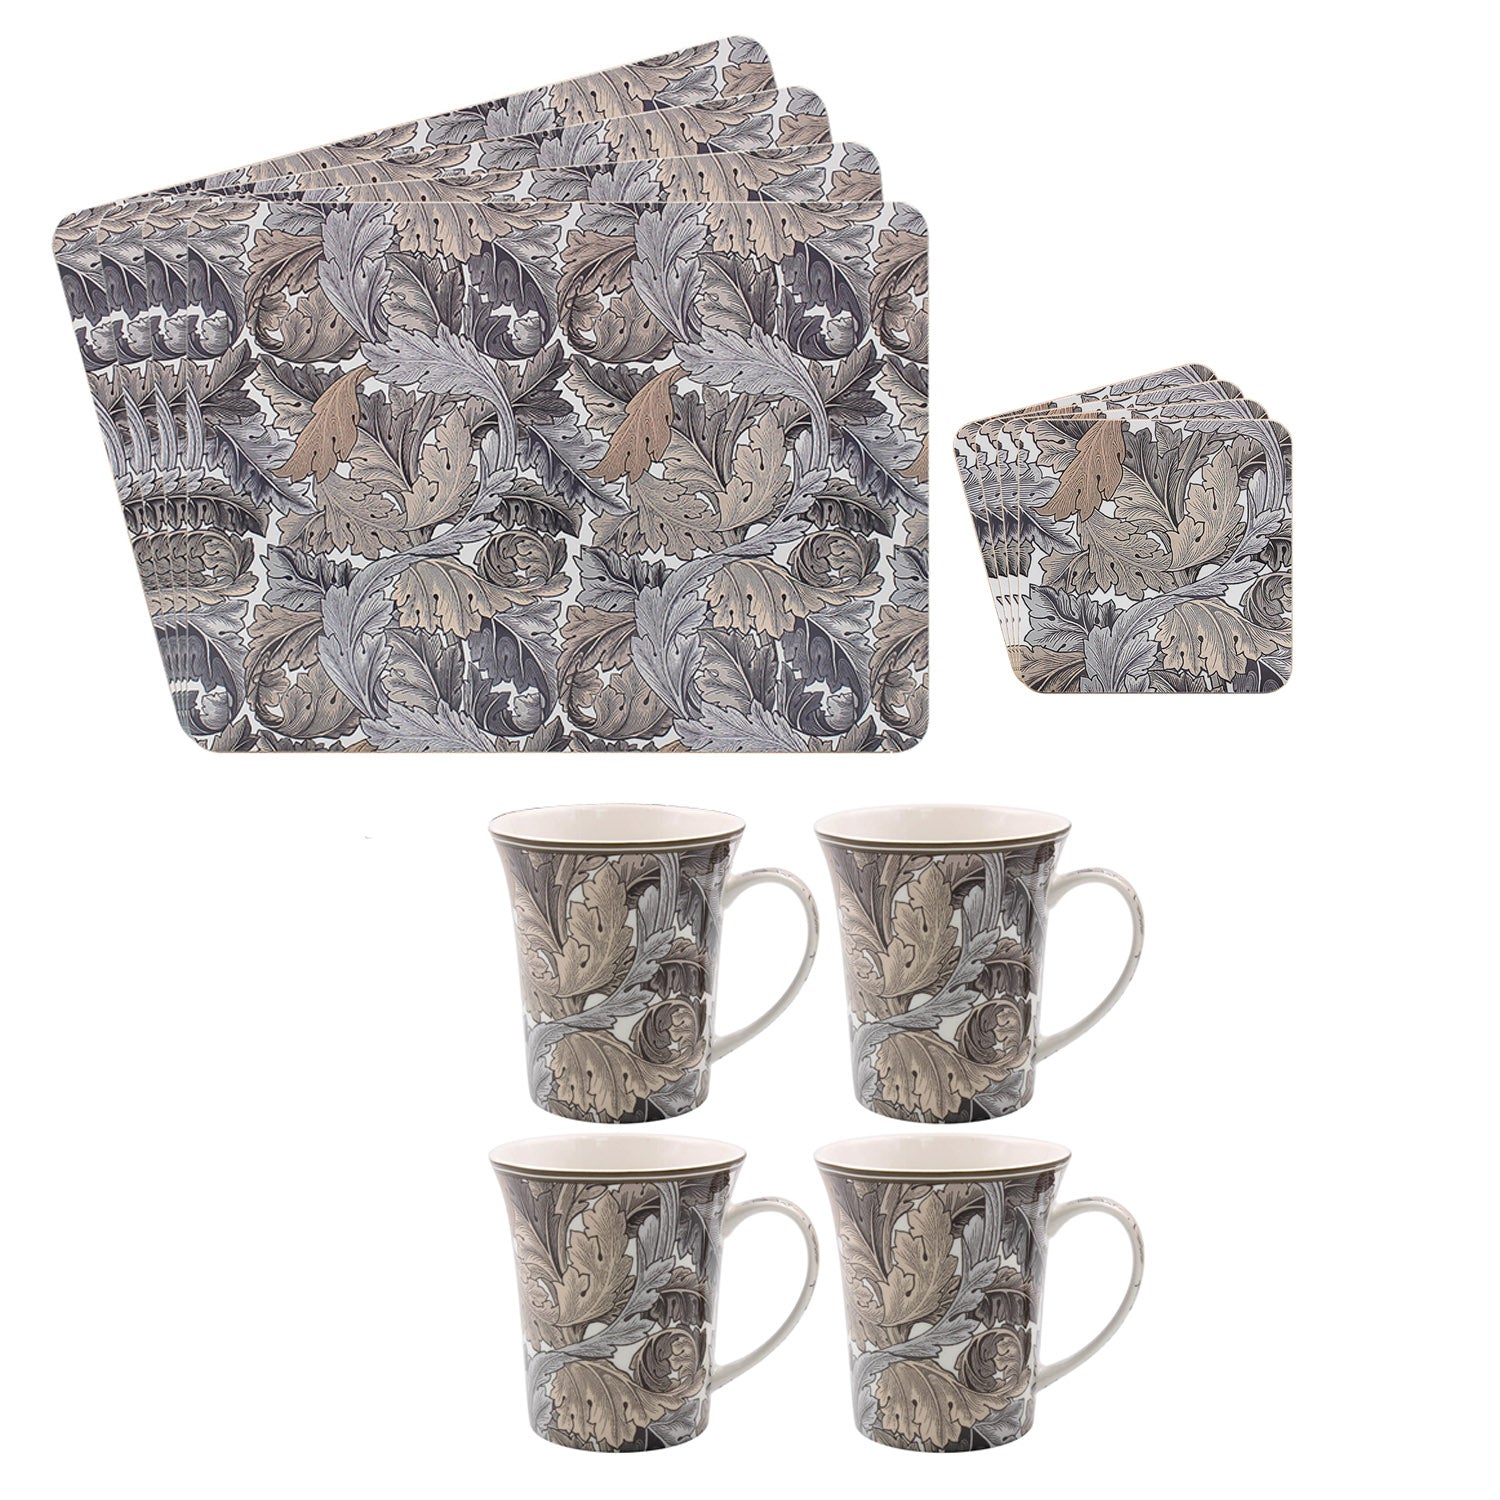 12-pc W Morris Acanthus Ceramic Mugs Cork Square Coasters Placemat Set